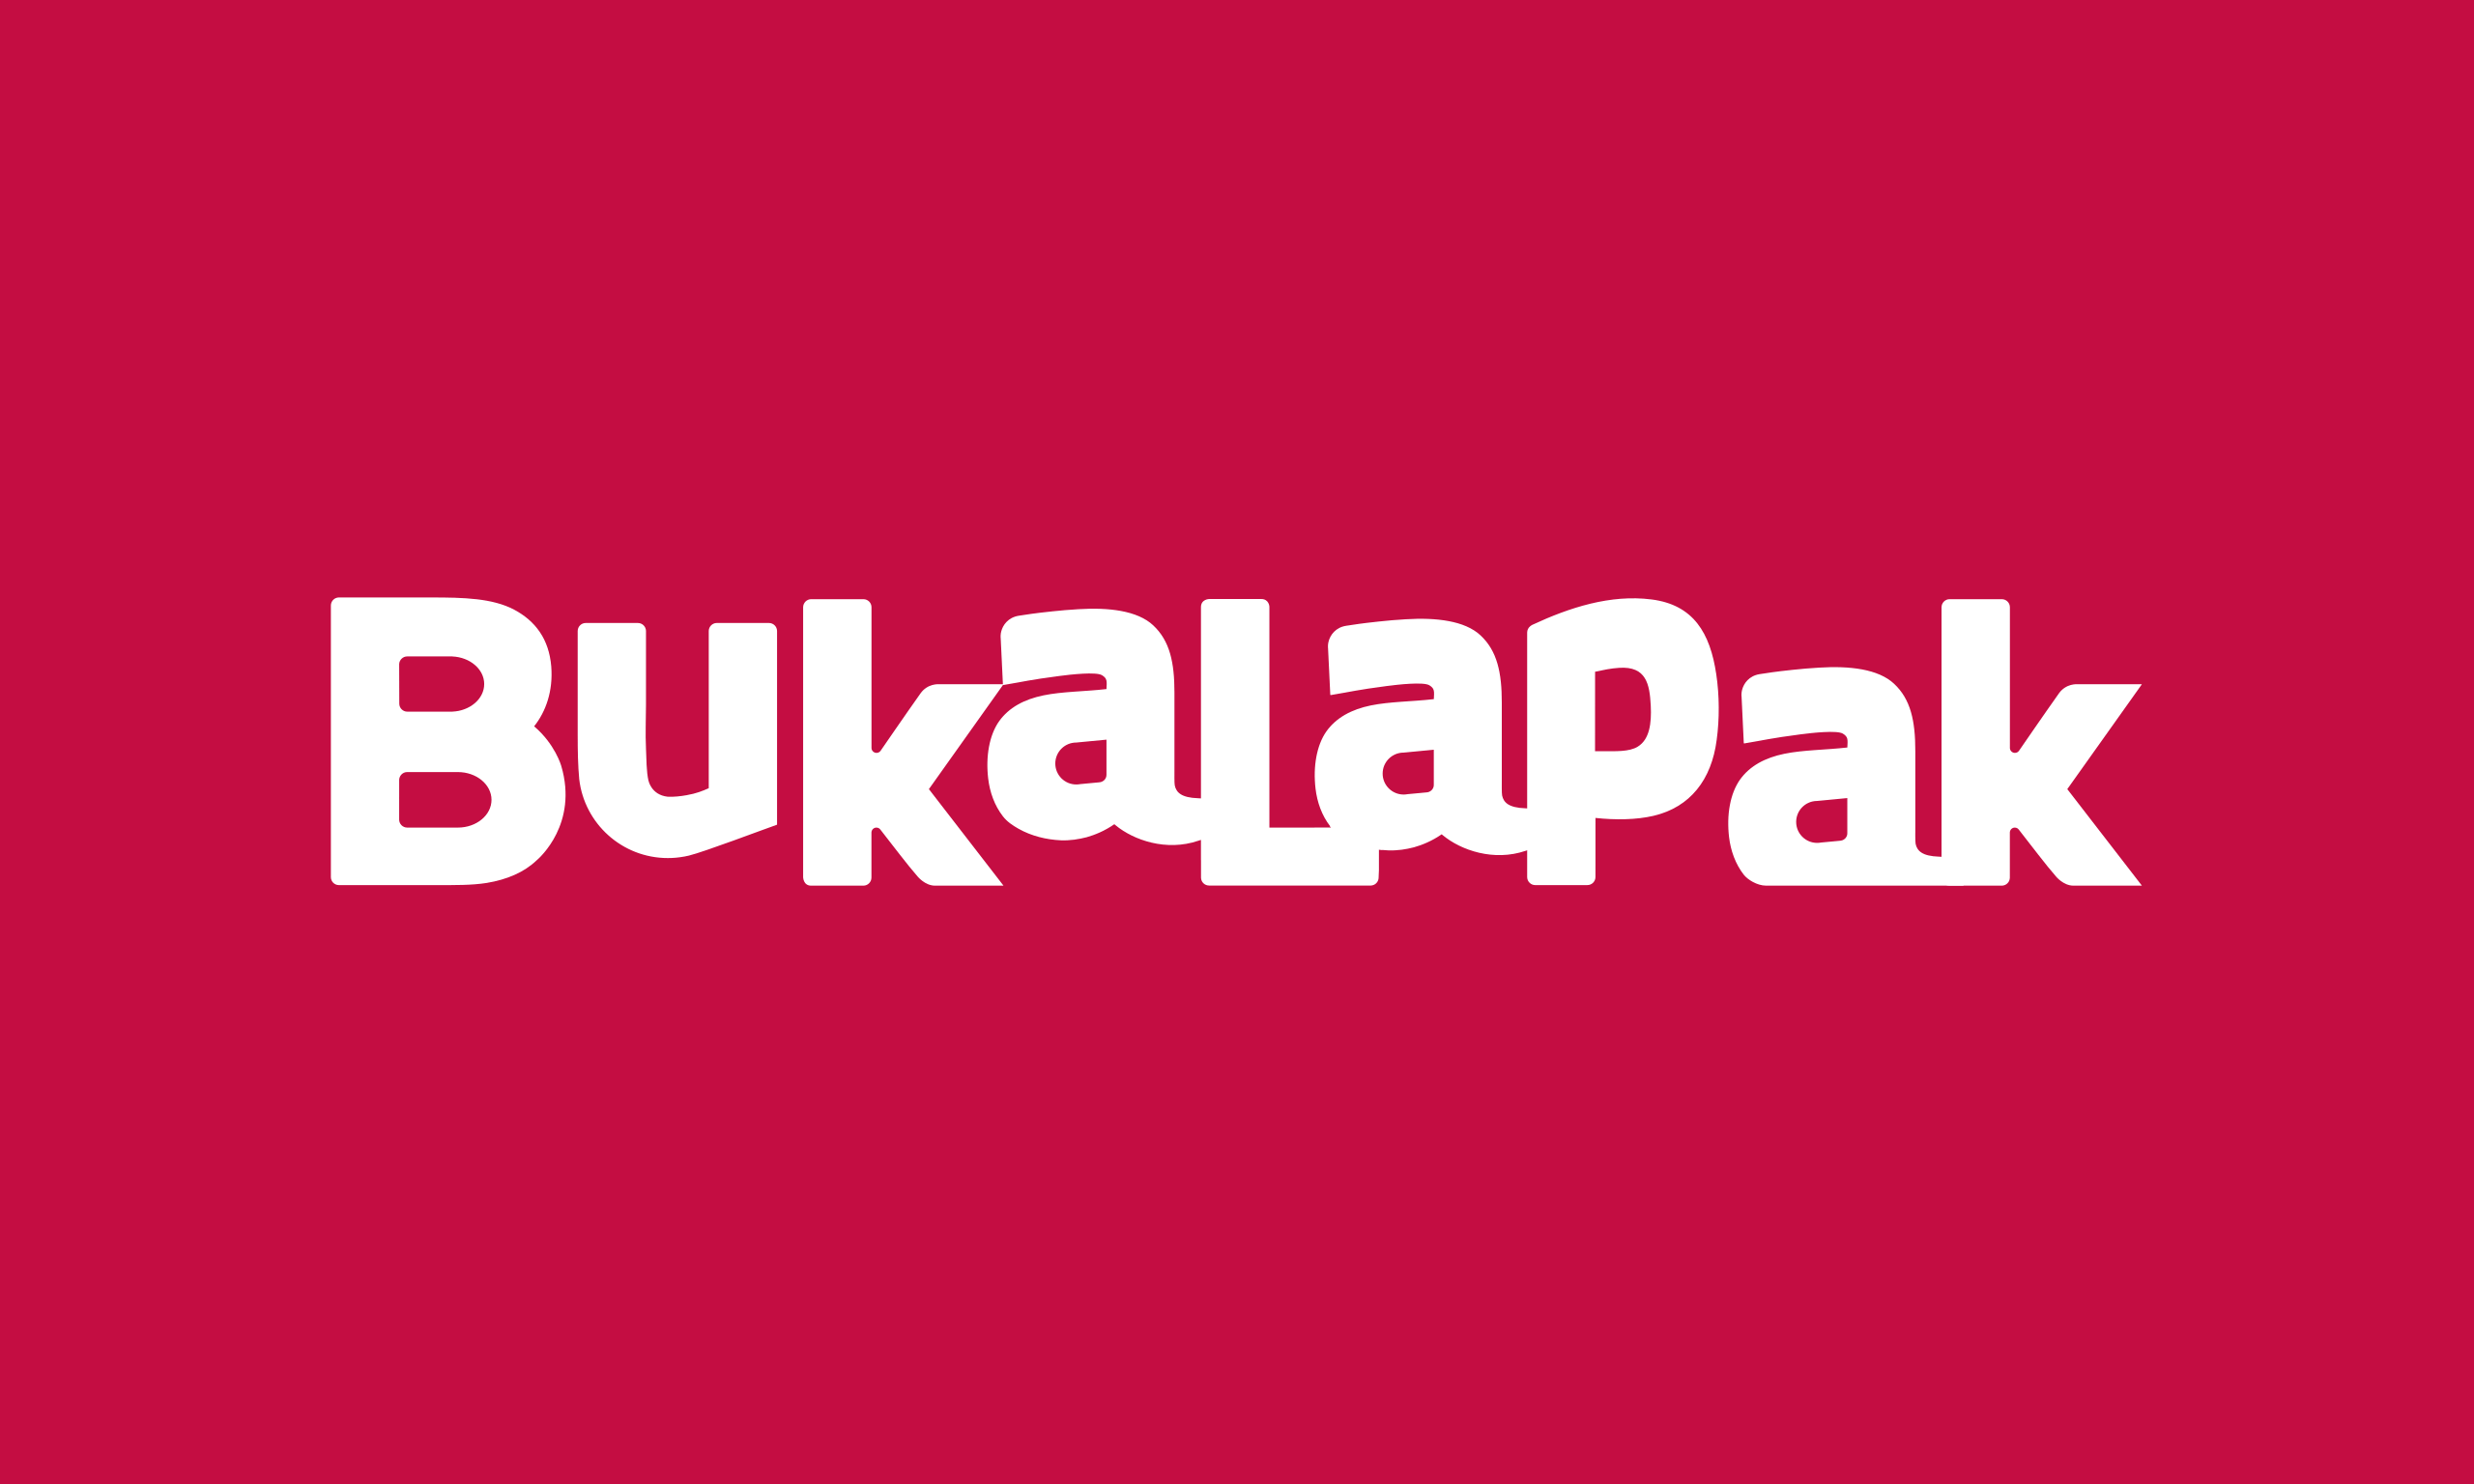 bukalapak Logo - File:Bukalapak logo.svg